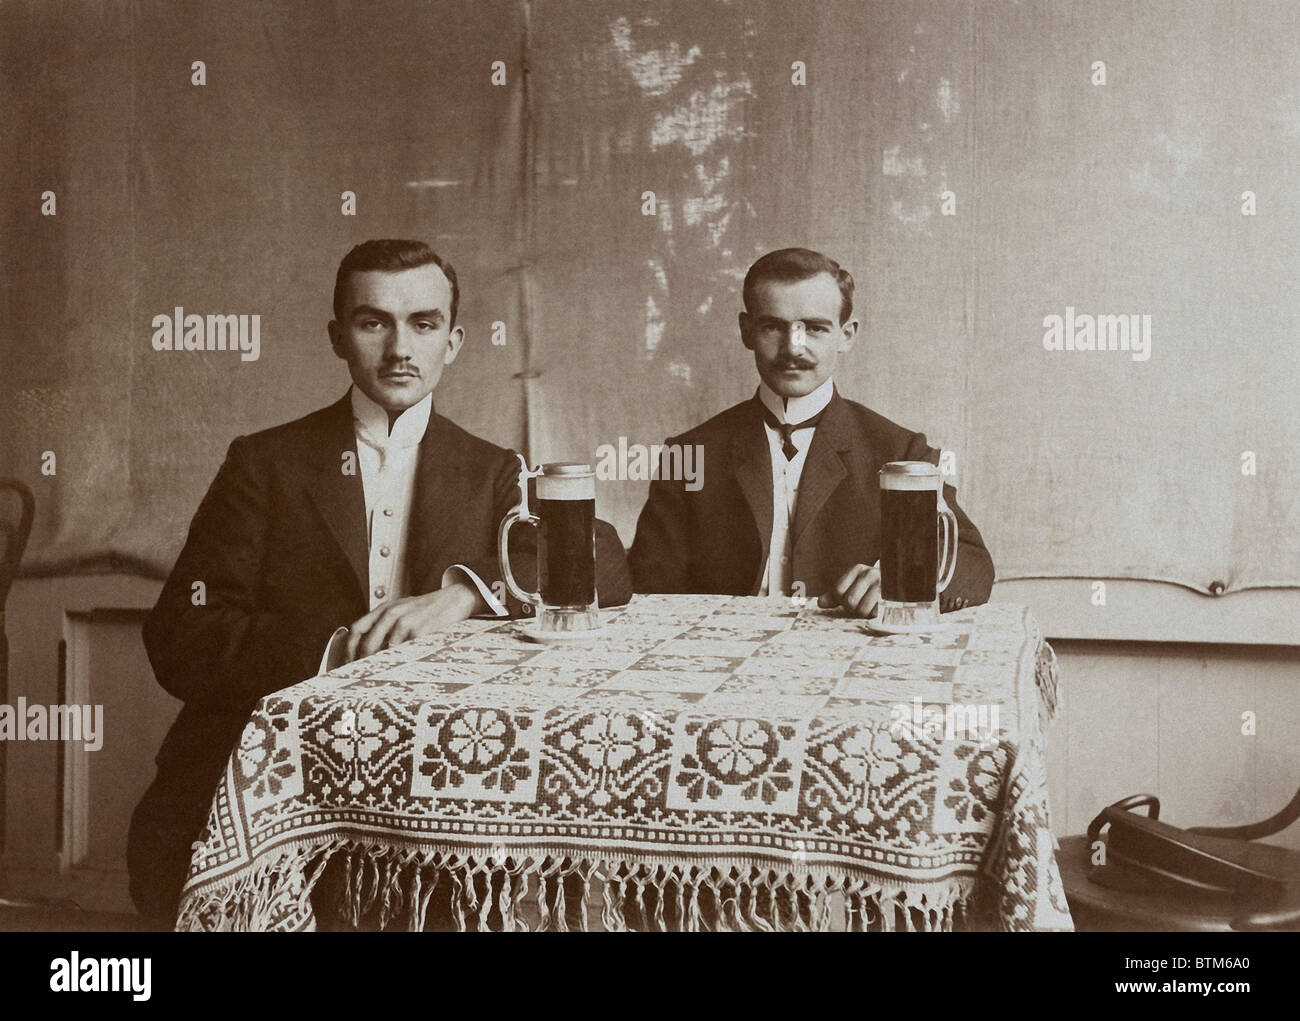 Photo historique (1910) de deux hommes en train de boire une bière Banque D'Images